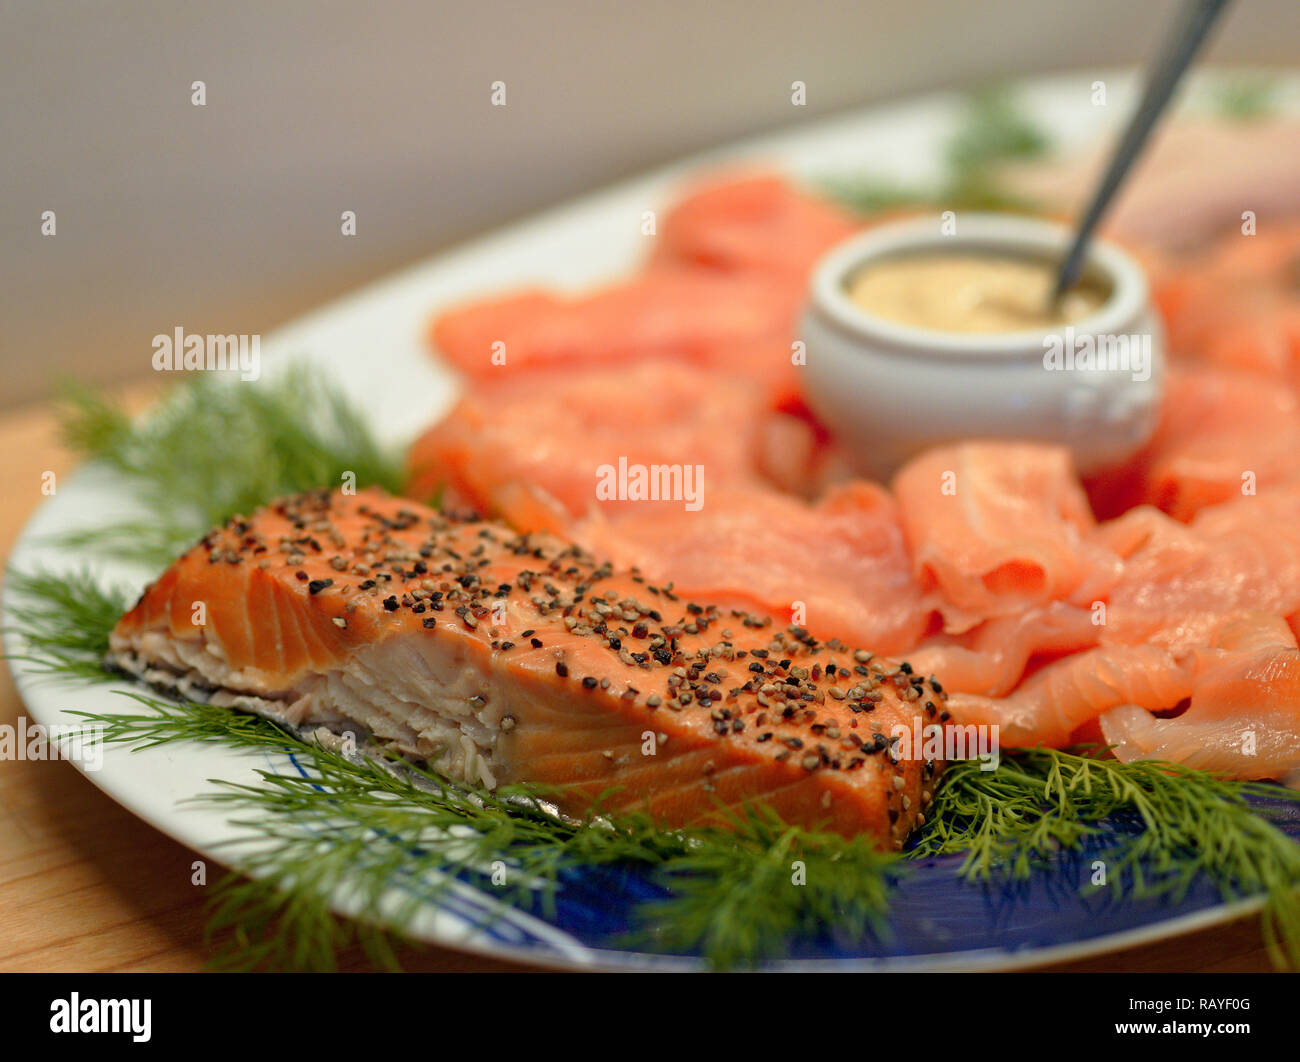 Fritti di filetto di salmone disposti su una piastra con aneto, fette di salmone affumicato, e un piccolo piatto cinese con la salsa di senape Foto Stock